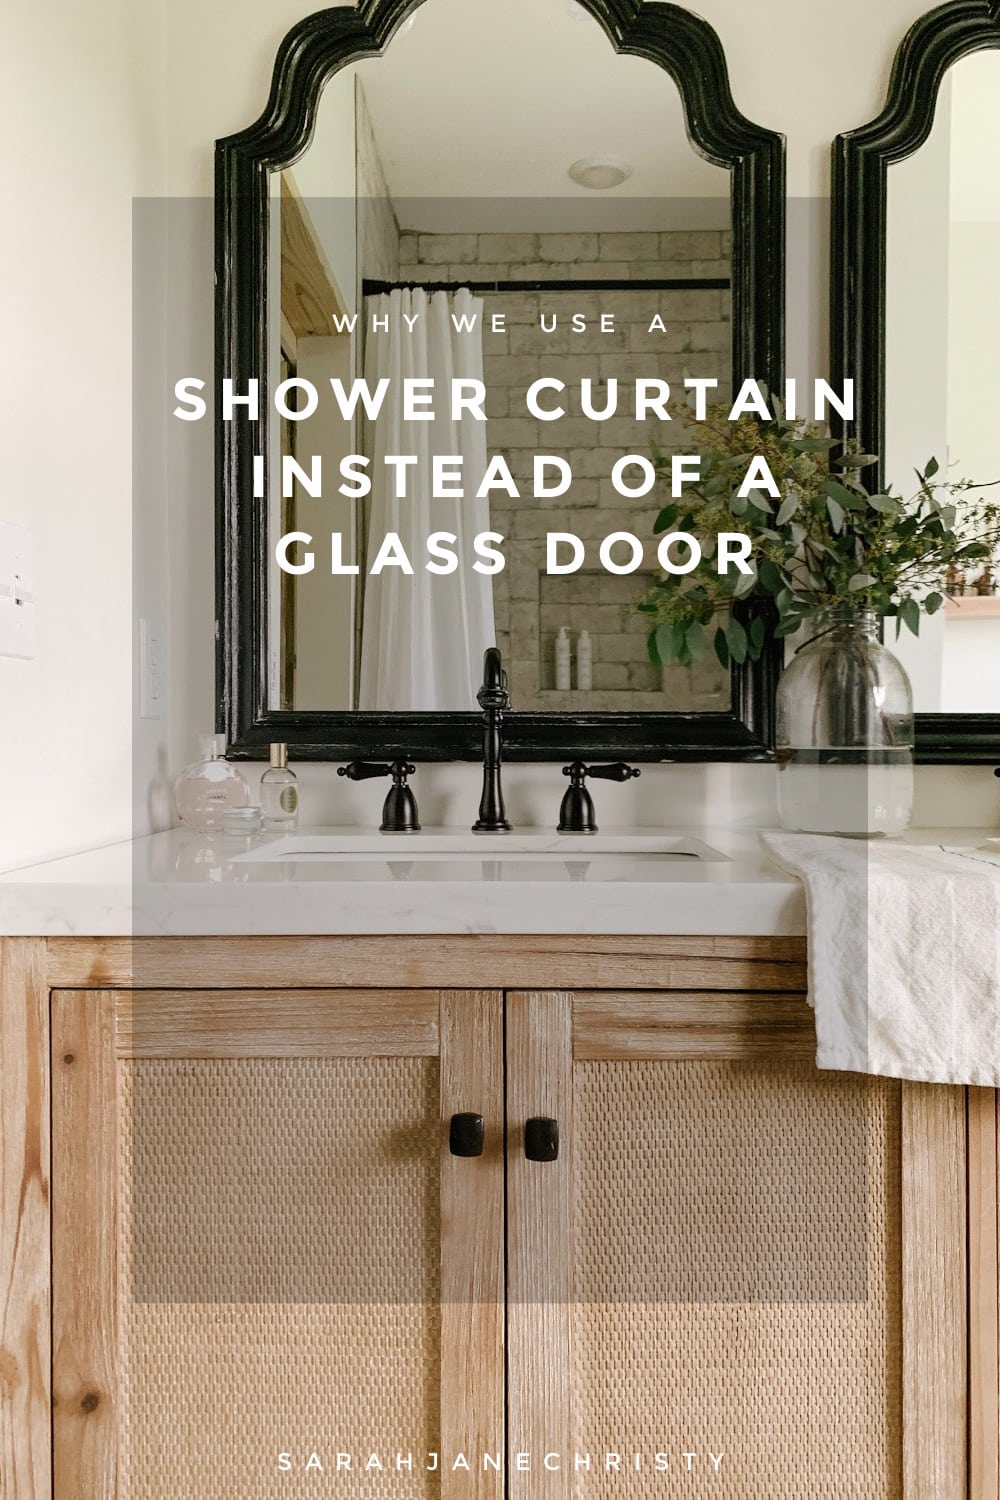 Shower Curtain Instead Of A Glass Door, Shower Door Vs Curtain